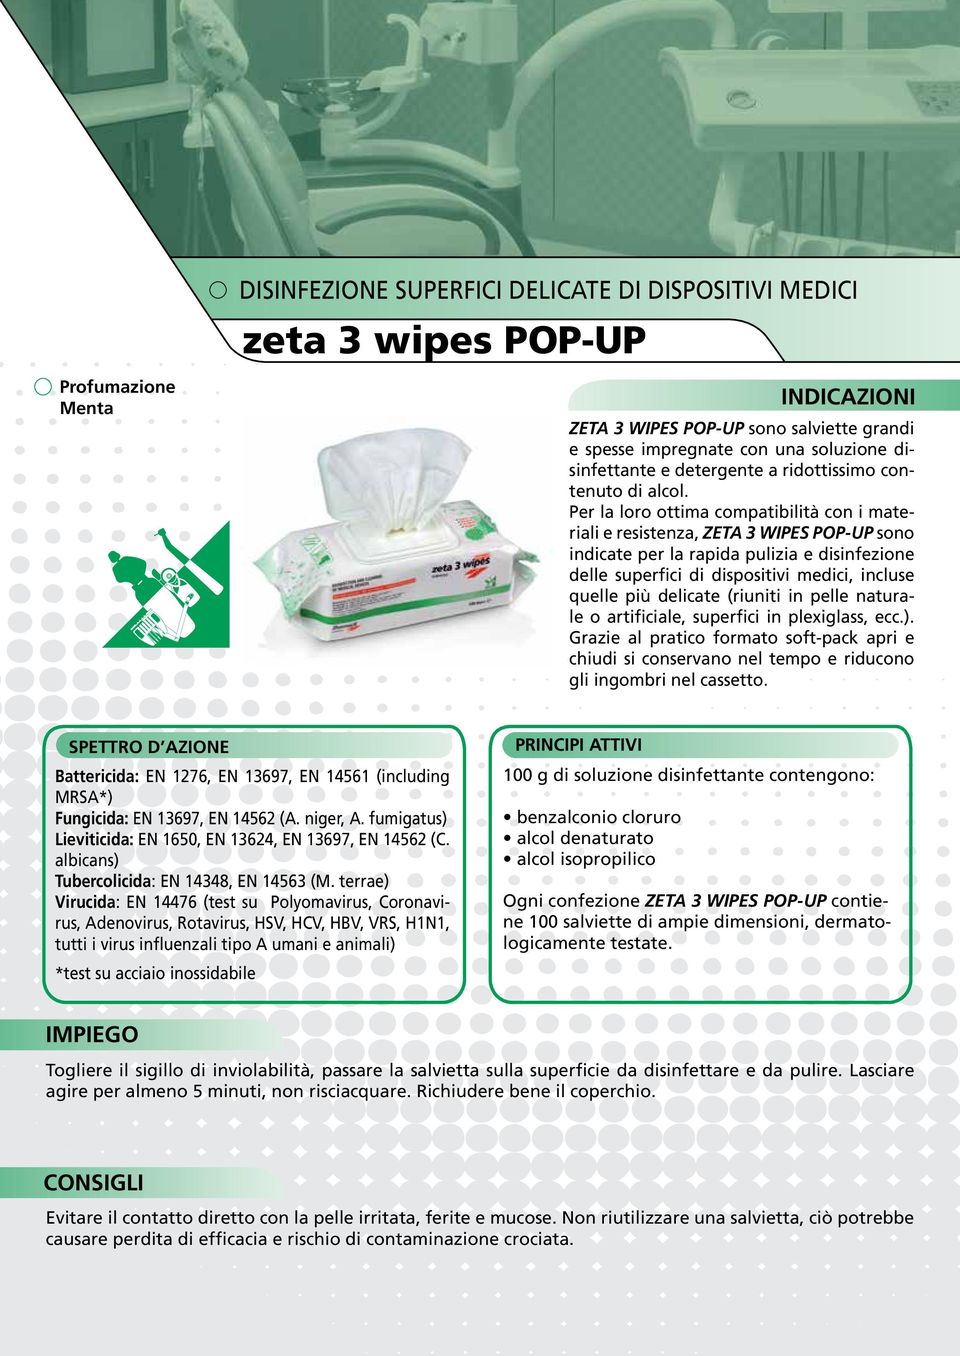 Per la loro ottima compatibilità con i materiali e resistenza, ZETA 3 WIPES POP-UP sono indicate per la rapida pulizia e disinfezione delle superfici di dispositivi medici, incluse quelle più